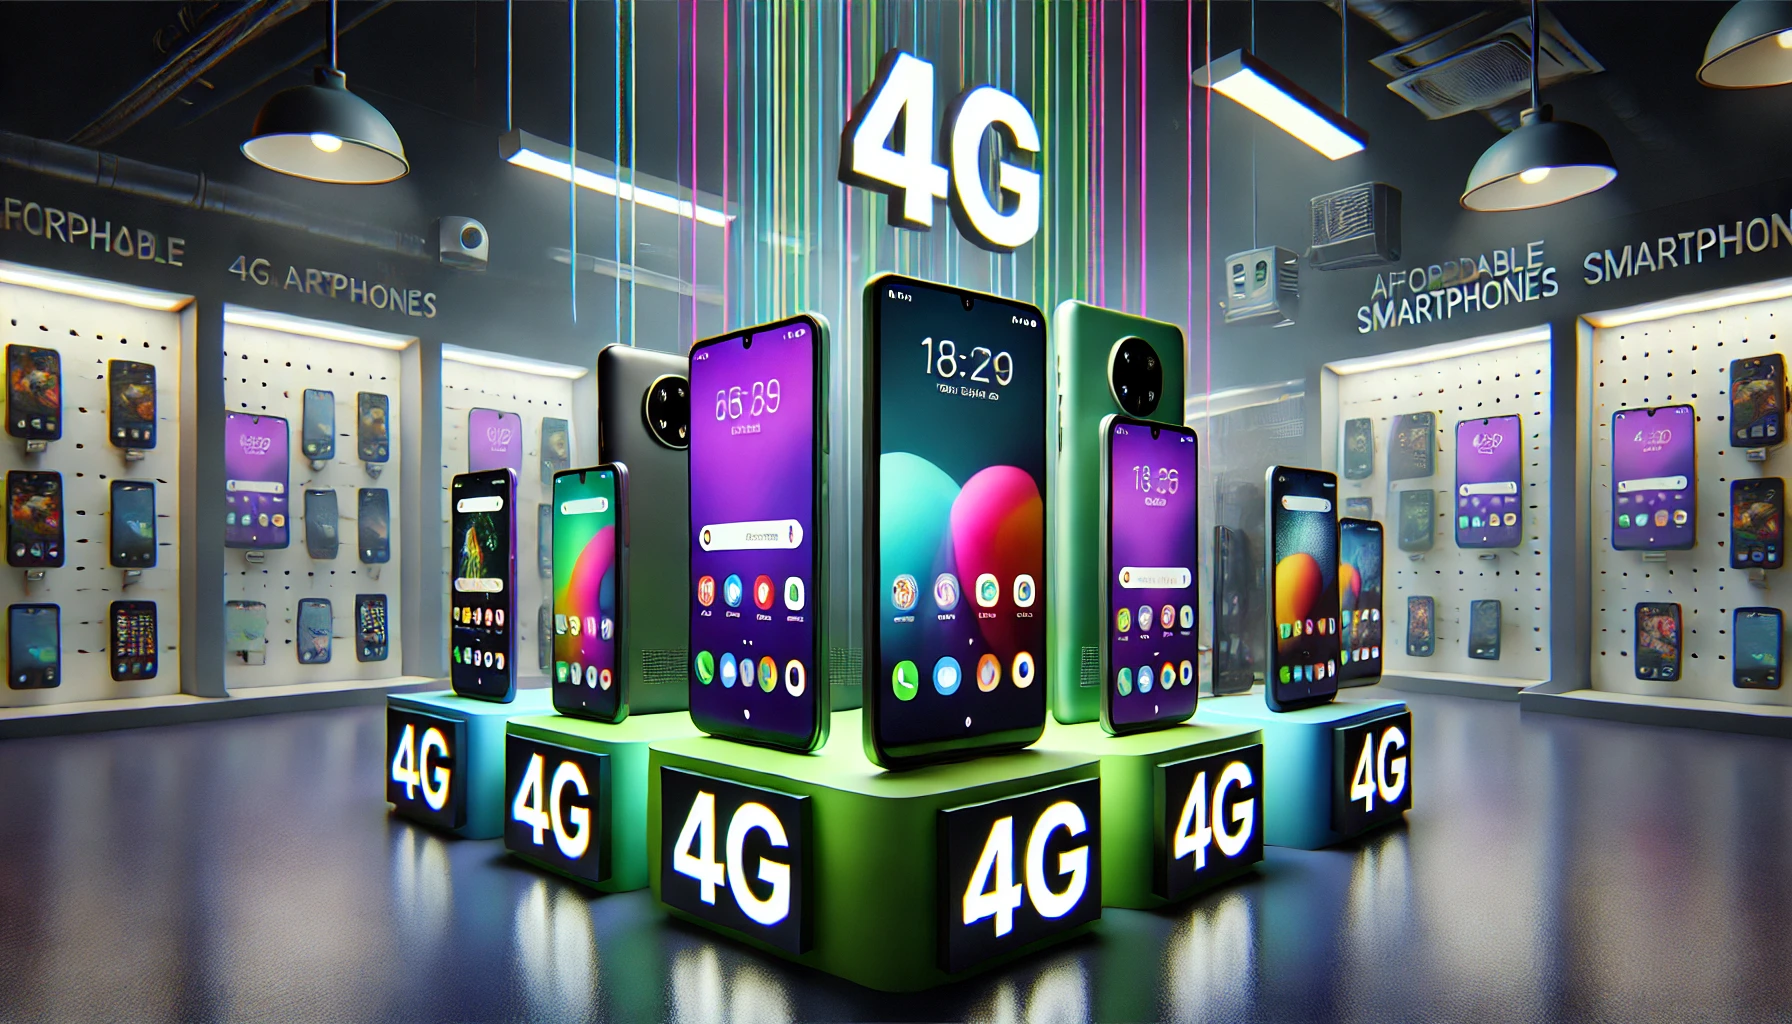 Image of Celulares 4G más Económicos - Smartphones Android Baratos